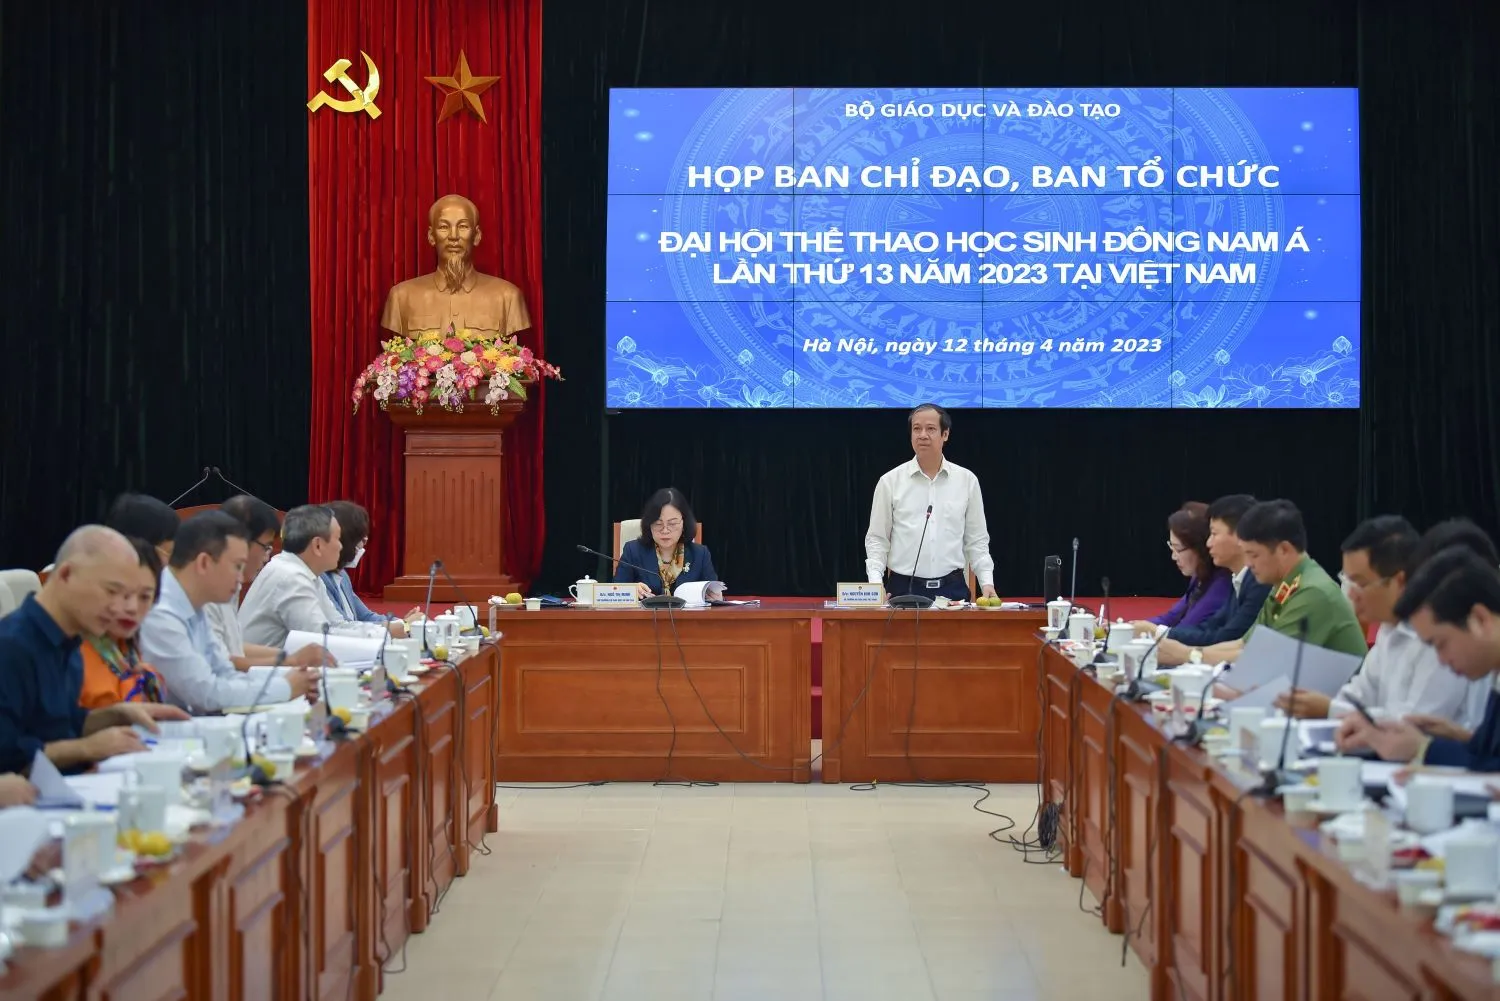 Bộ trưởng Bộ GD&ĐT Nguyễn Kim Sơn - Trưởng Ban Chỉ đạo - phát biểu tại phiên họp.